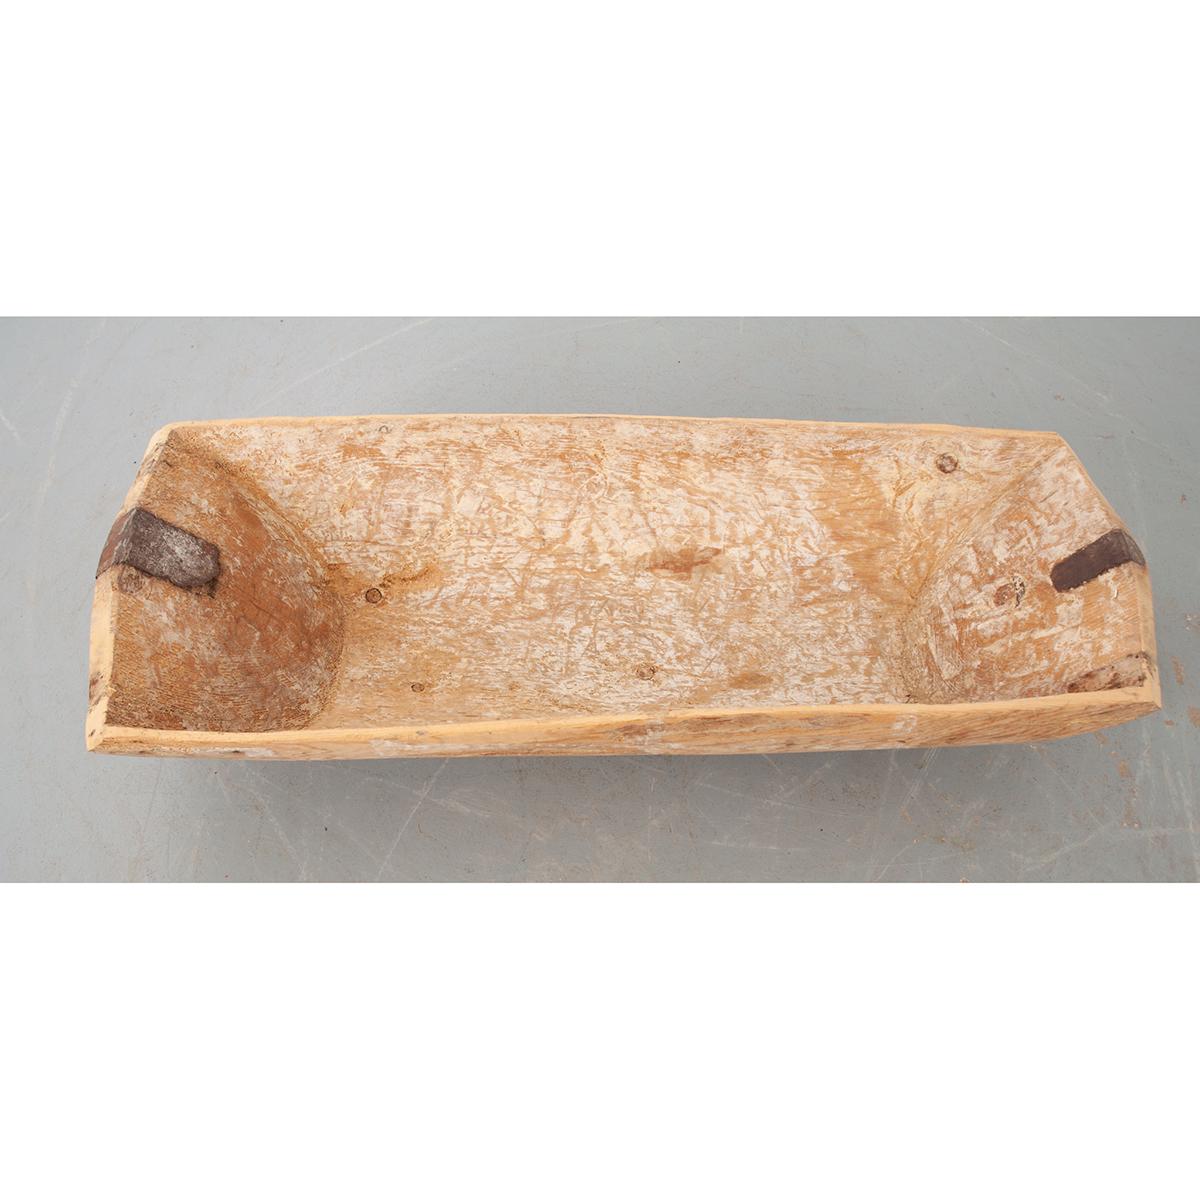 Dies ist eine französische Teigschüssel, ein Holzgefäß, das zum Mischen von Brotteig verwendet wird. Diese Schalen waren in jedem Haus zu finden und wurden in der Regel aus einem großen Stück Holz geschnitzt. Jetzt wäre es ein nettes Gesprächsthema